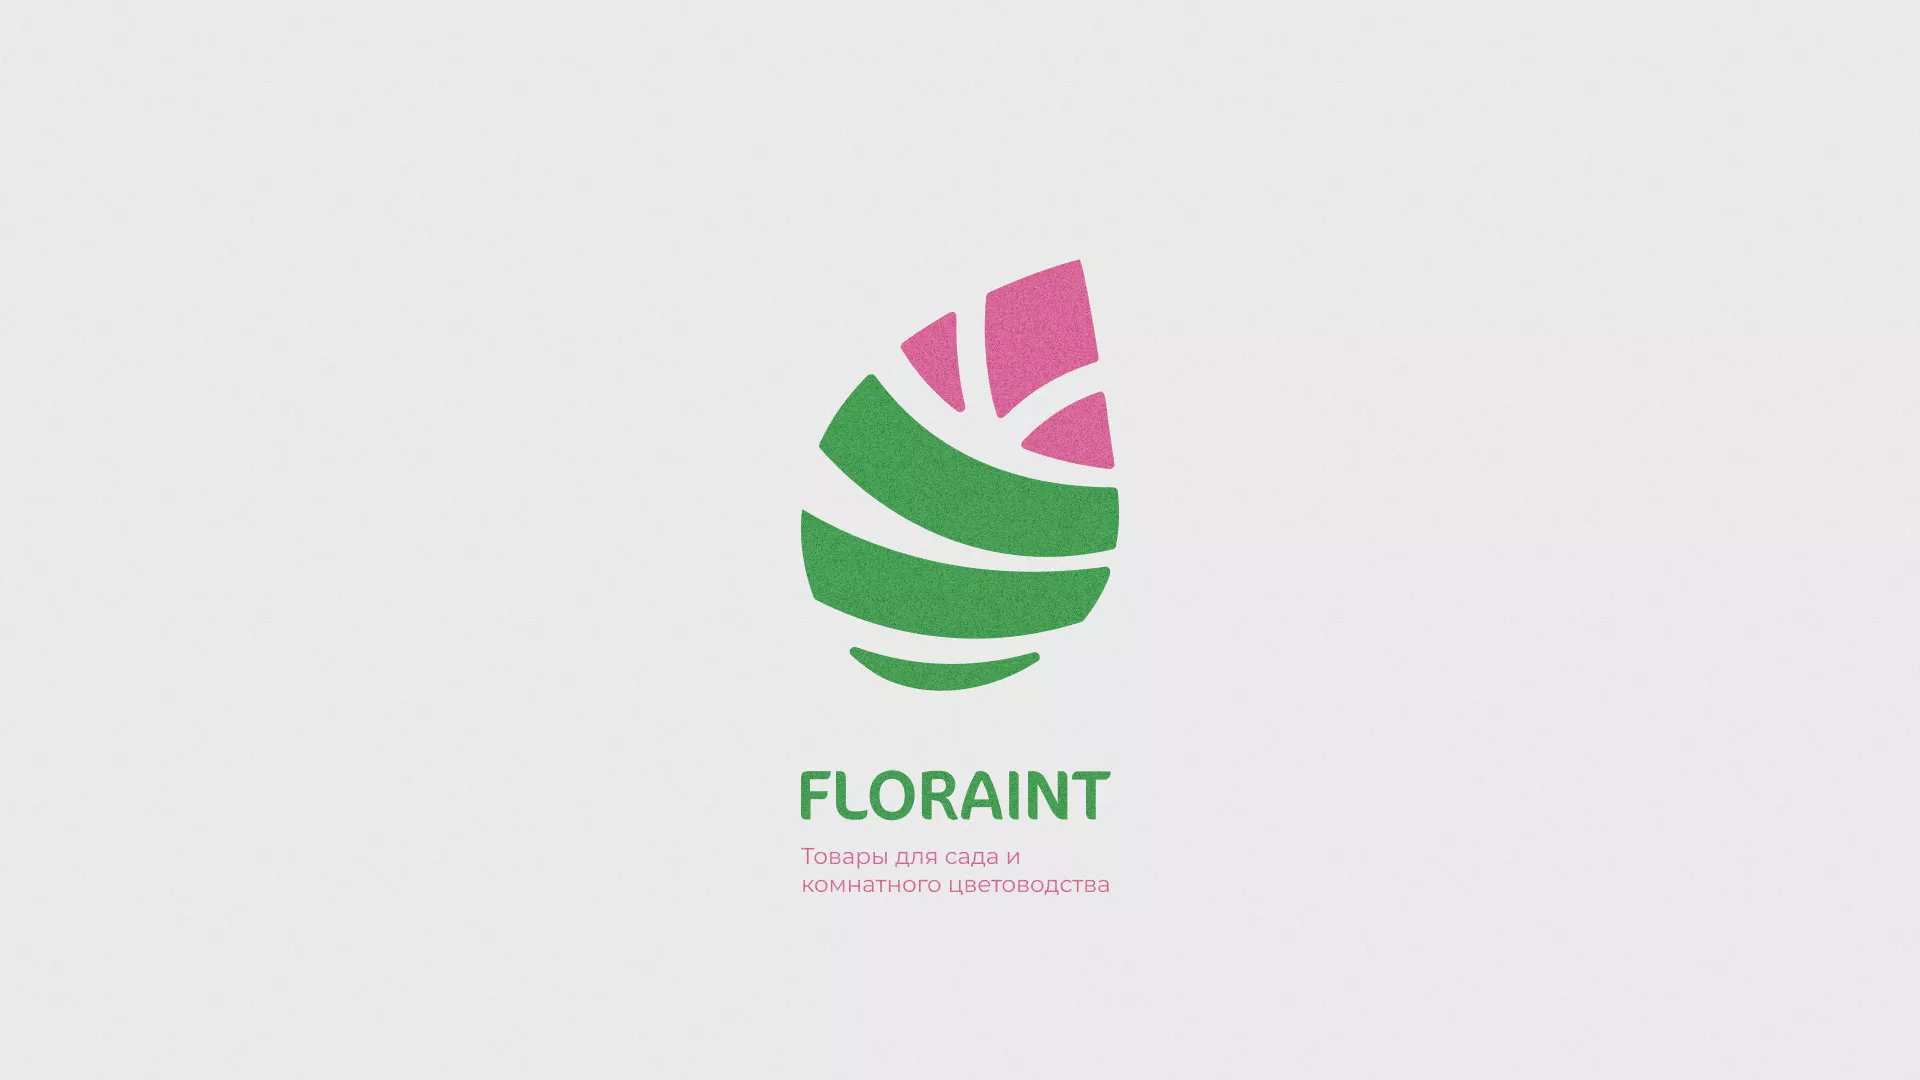 Разработка оформления профиля Instagram для магазина «Floraint» в Пушкино